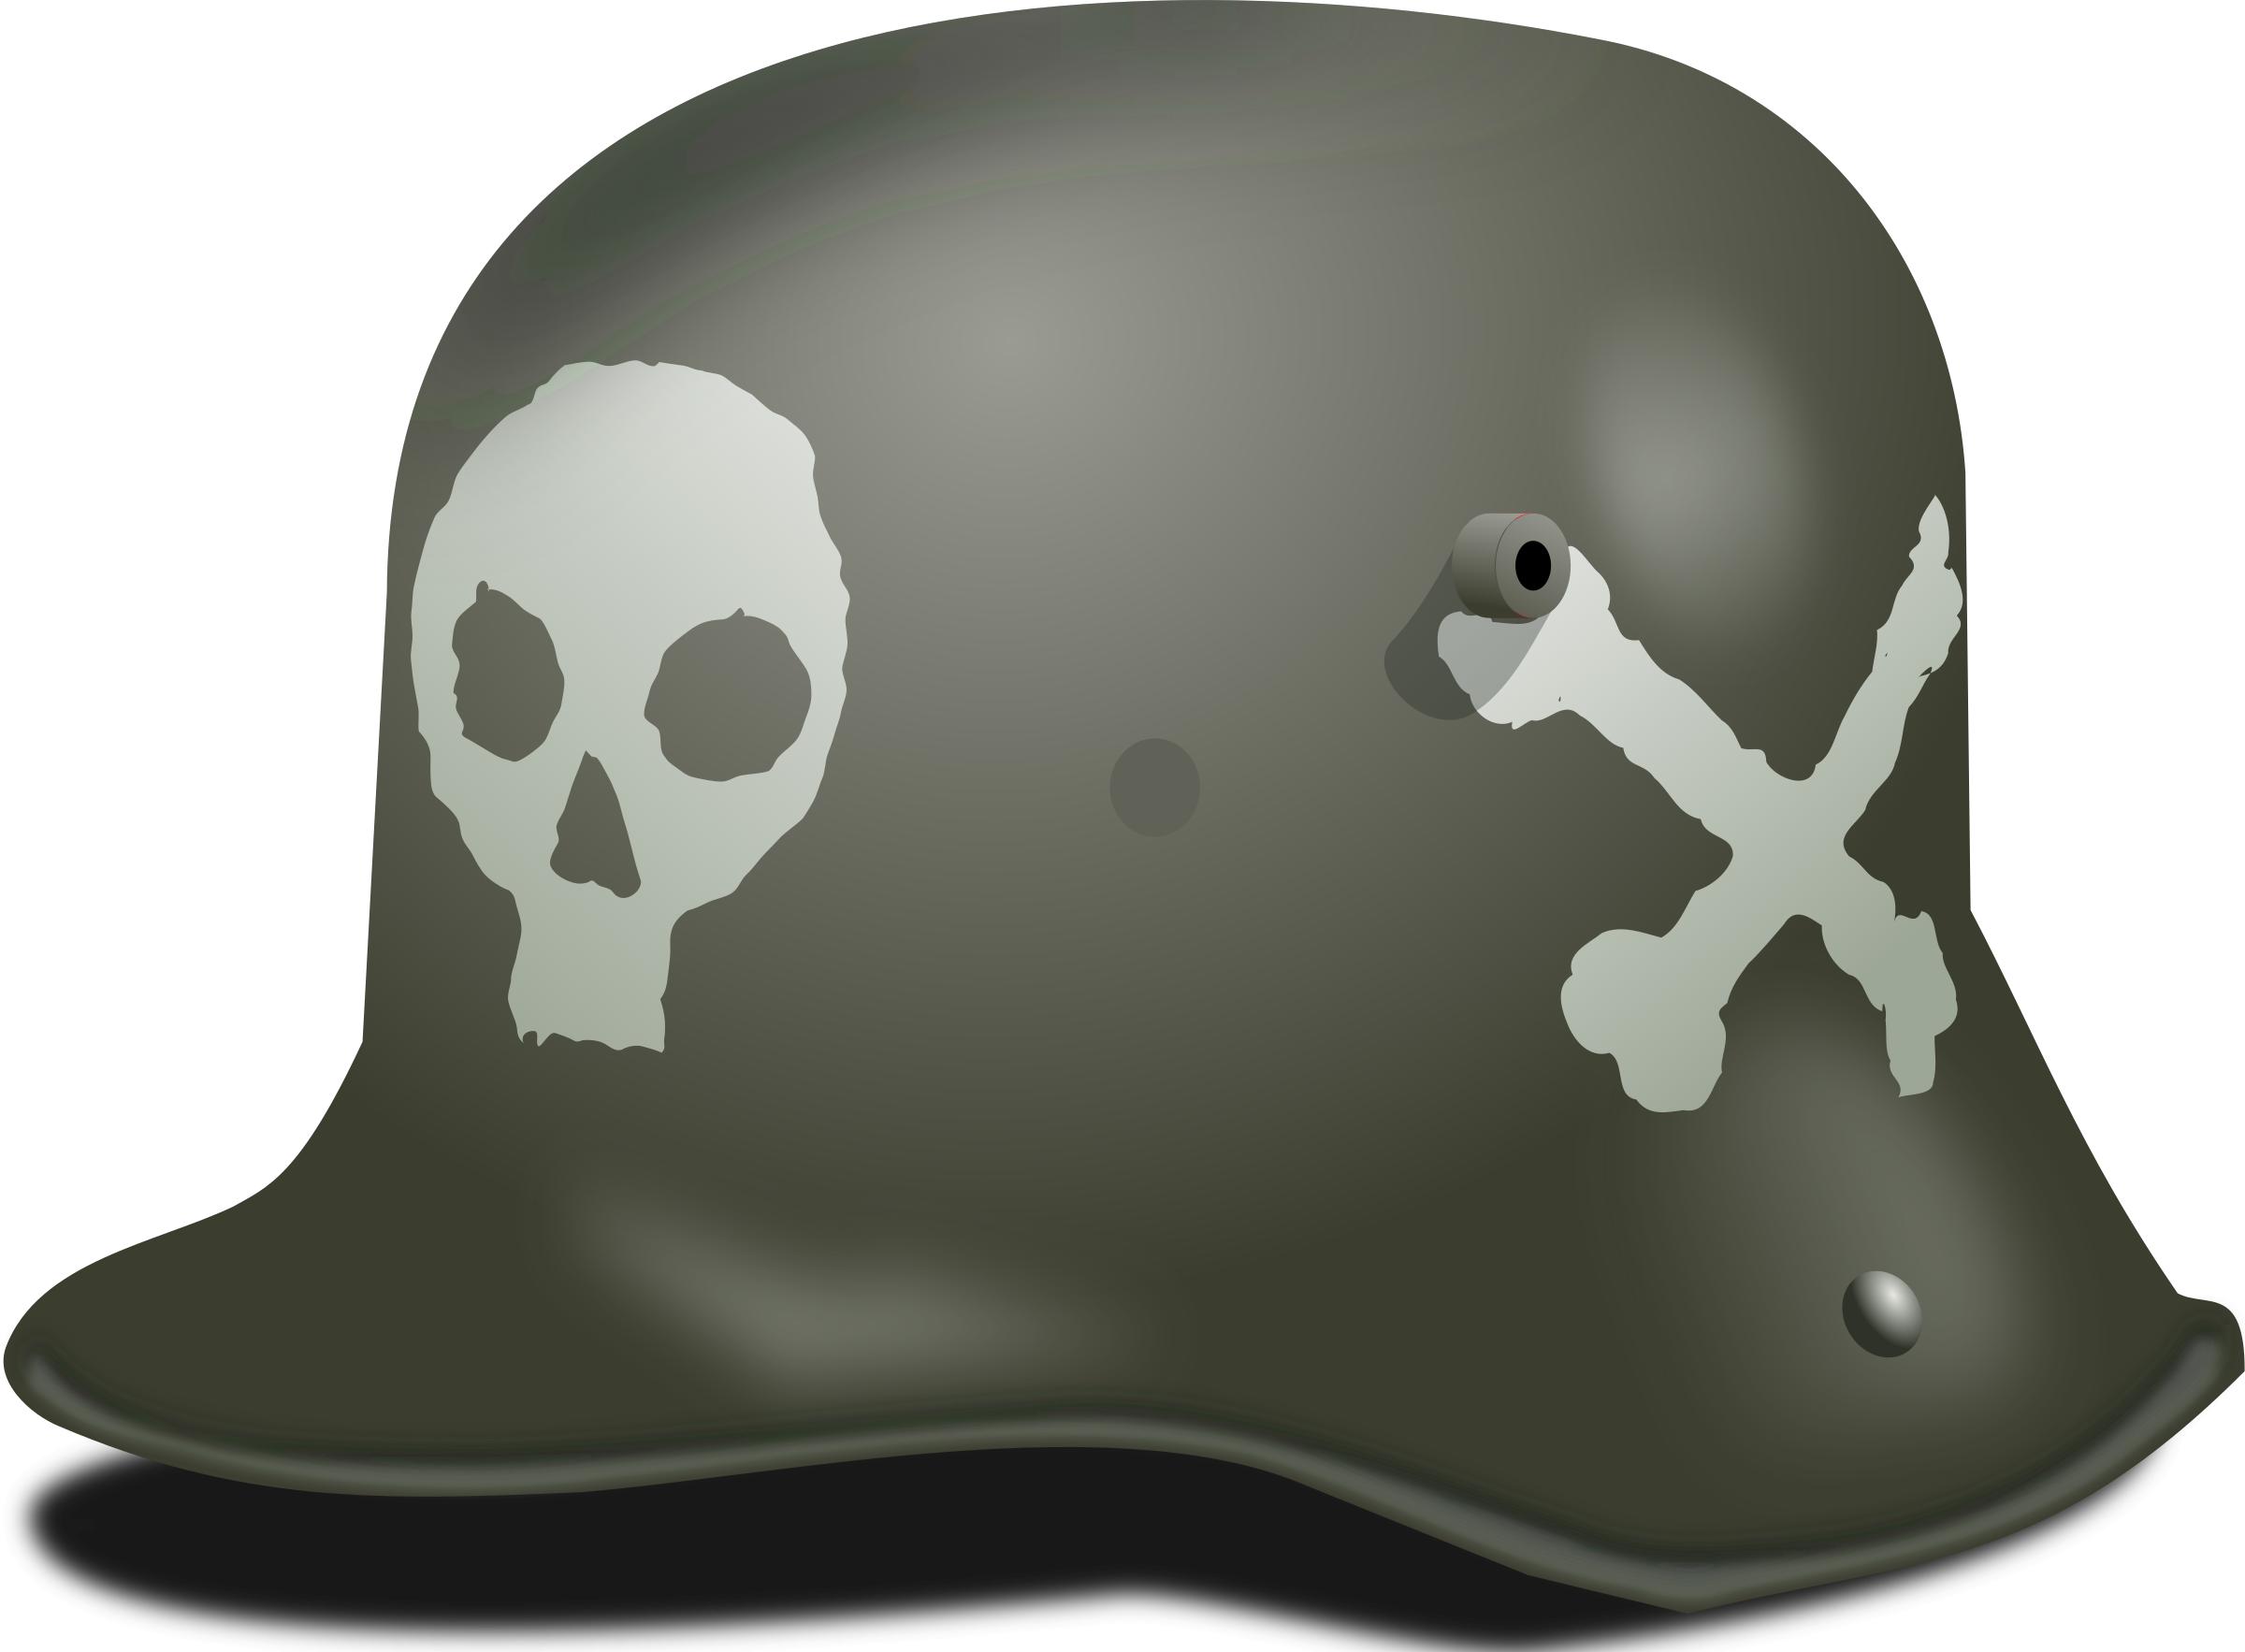 German Stormtrooper Helmet WW1 PNG icons